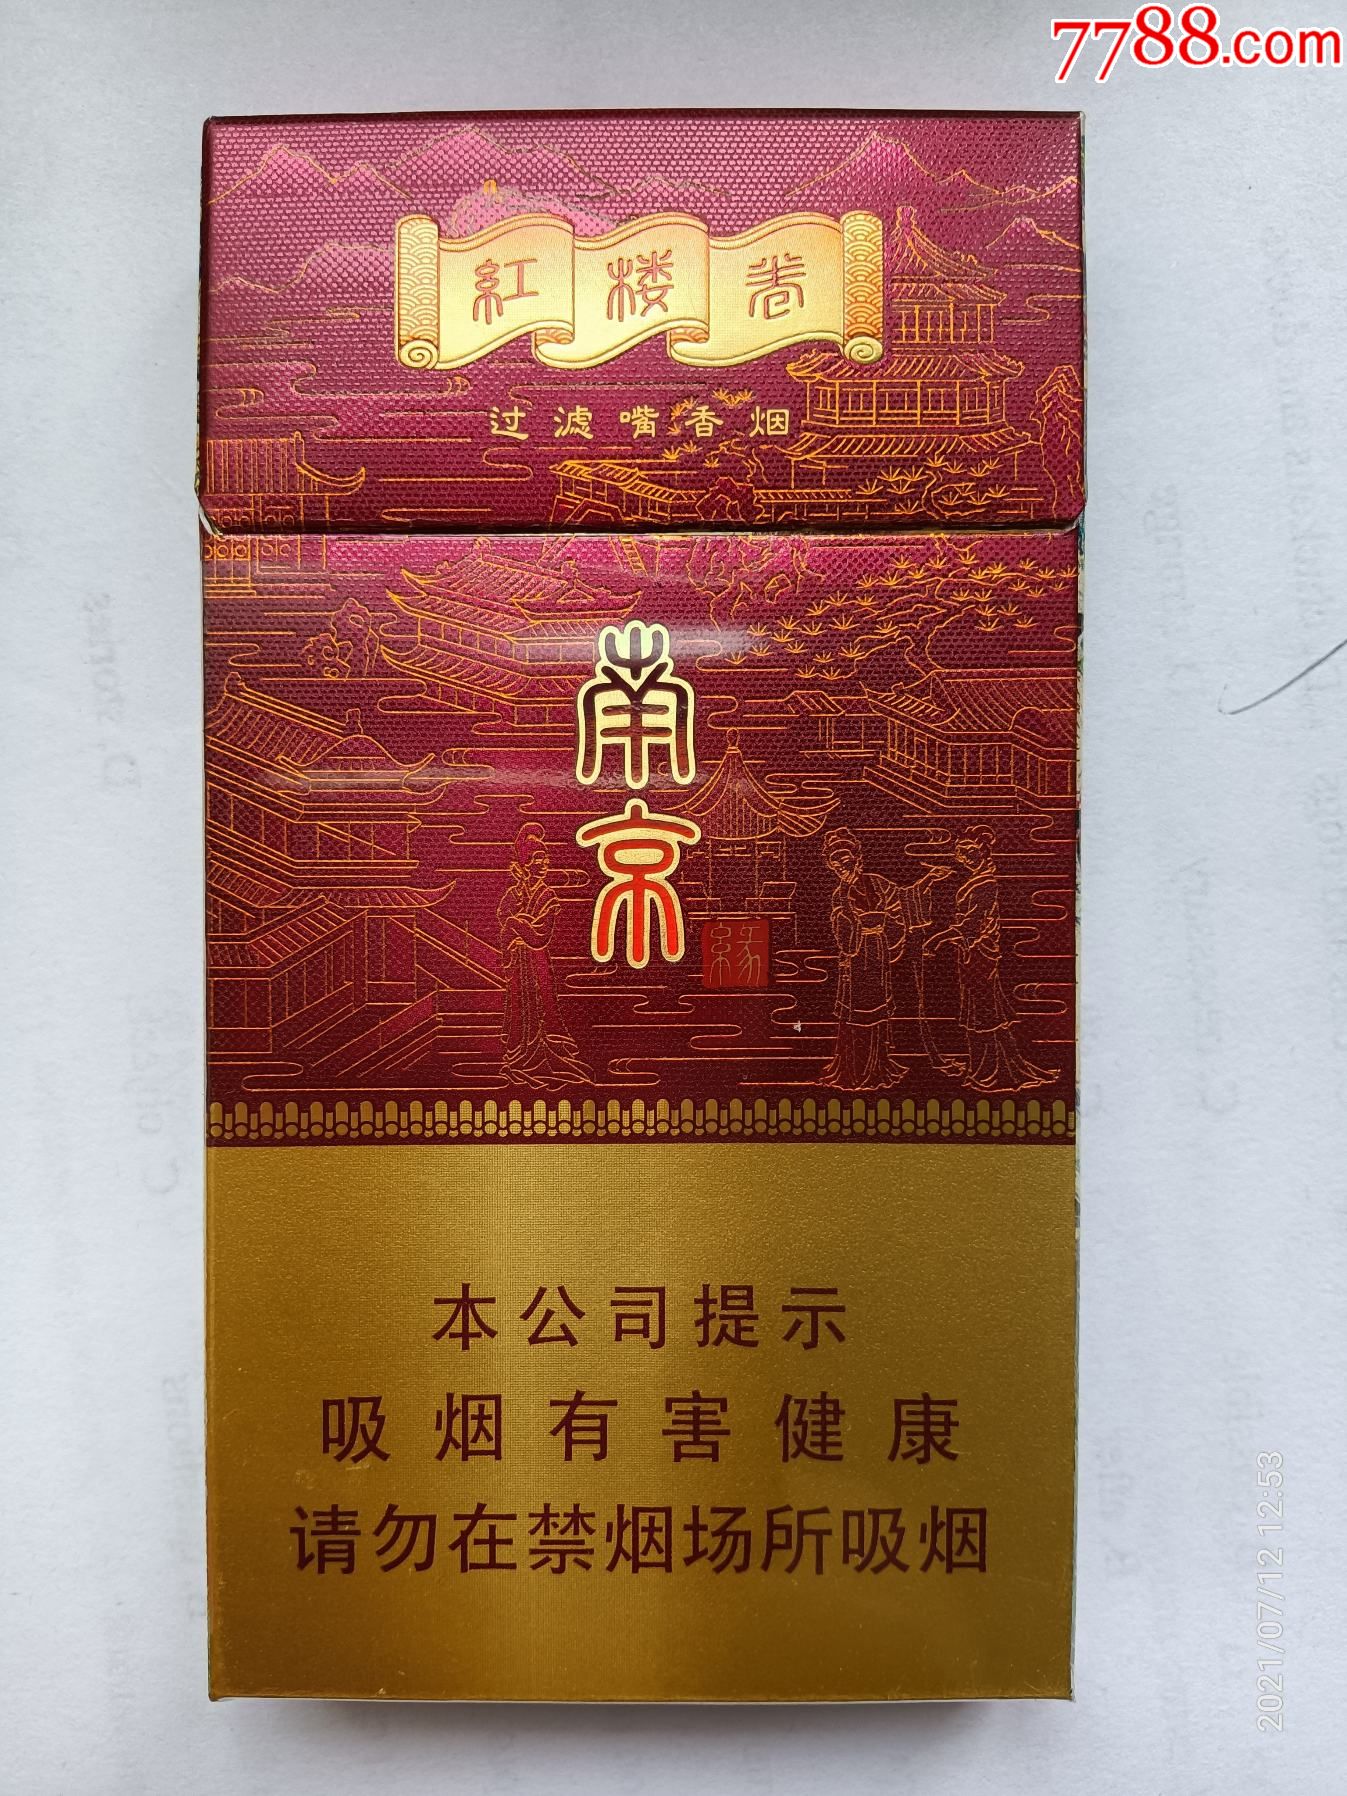 烟标:南京·缘·红楼卷—宝钗扑蝶·湘云眠芍,石头记,江苏中烟工业